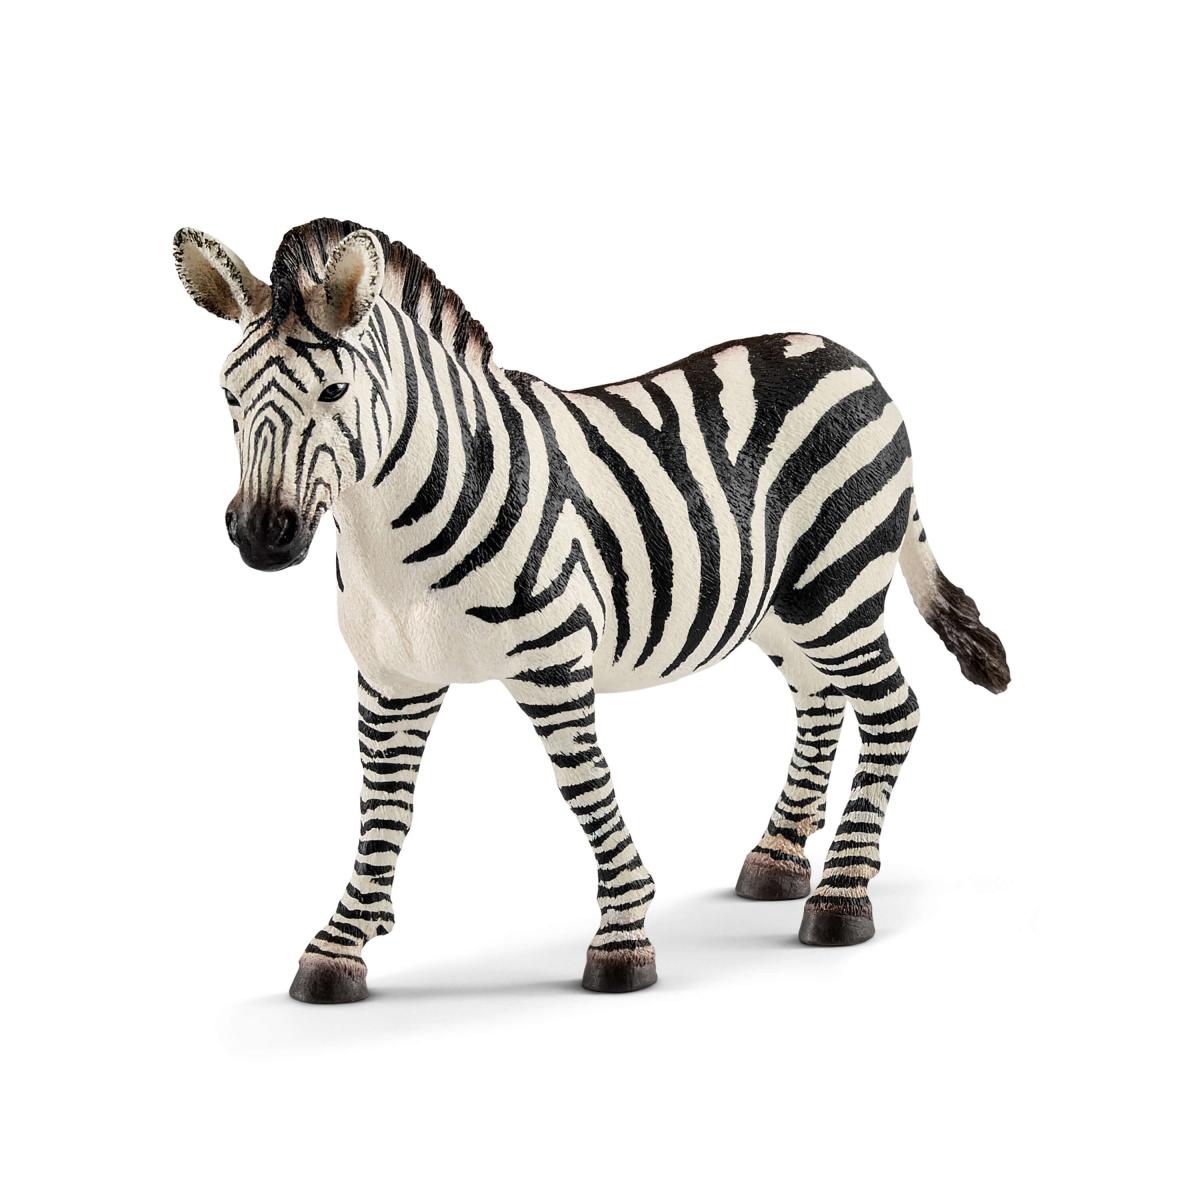 Zebra female (Schleich #14810)